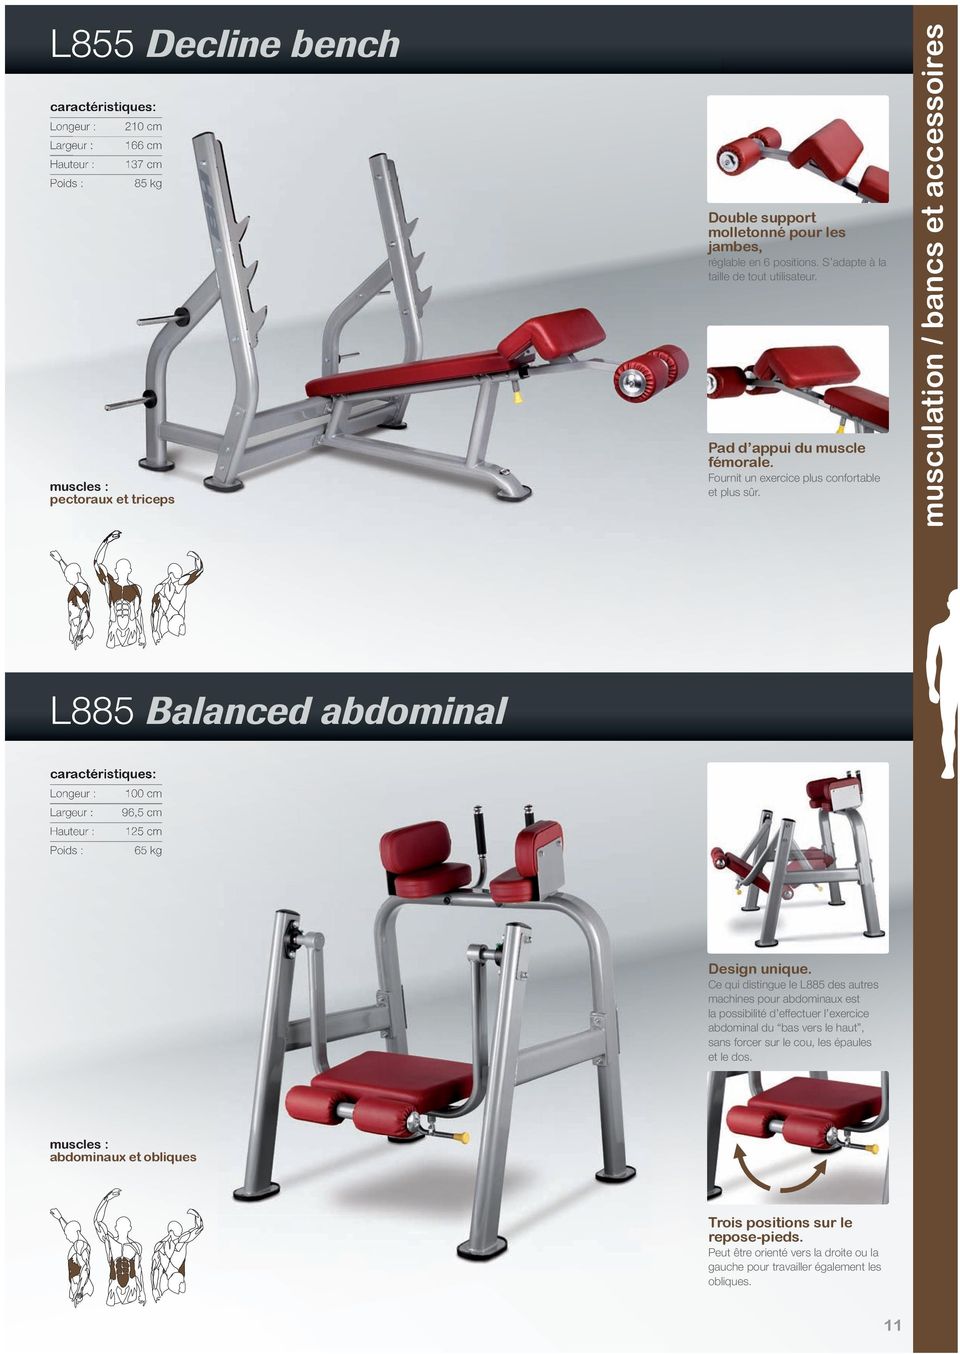 musculation / bancs et accessoires L885 Balanced abdominal Longeur : 100 cm Largeur : 96,5 cm Hauteur : 125 cm Poids : 65 kg Design unique.